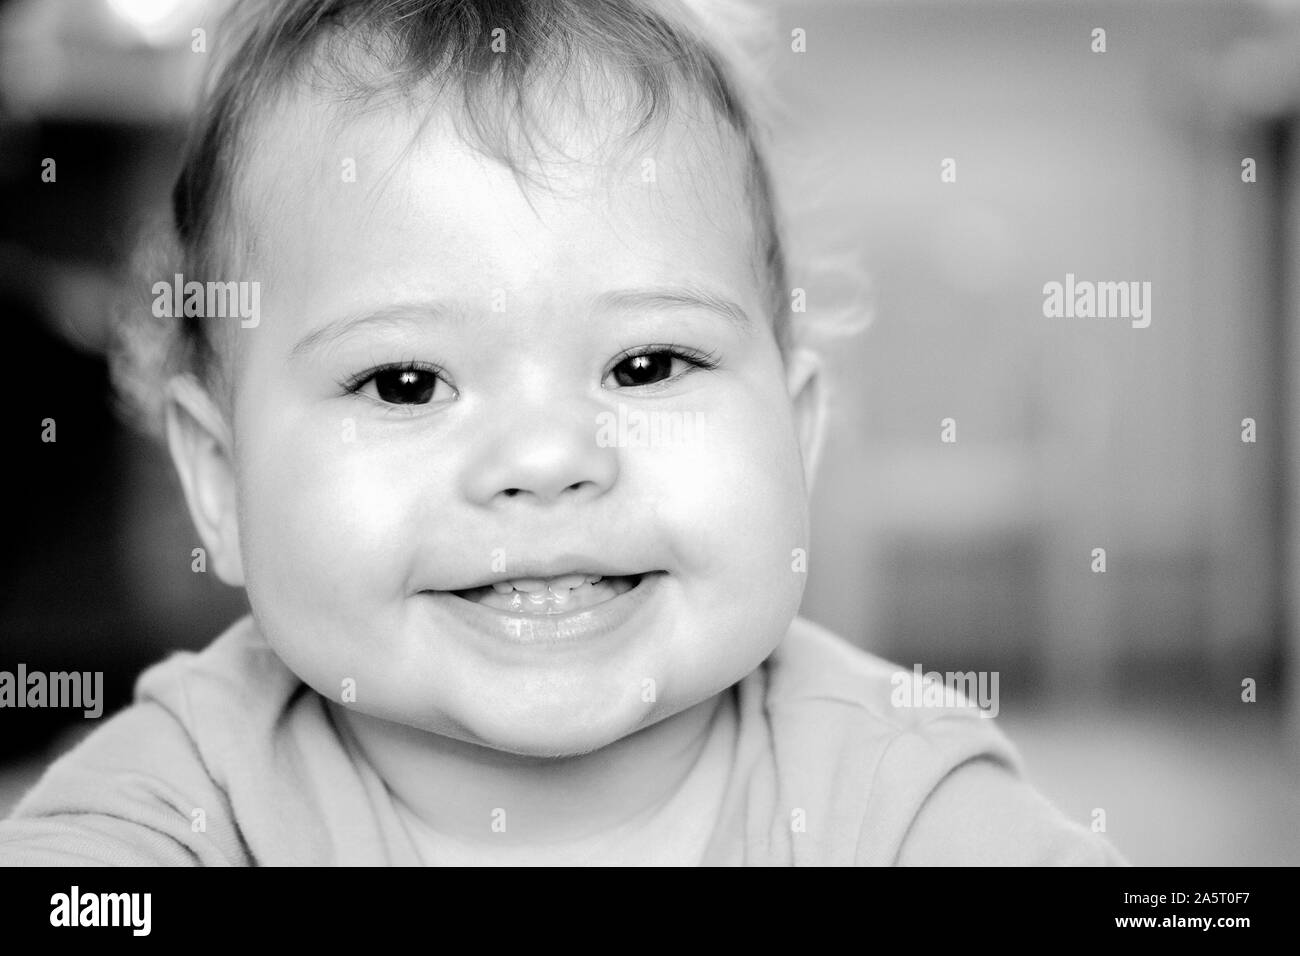 Junge Mädchen baby Schwarz und Weiß portrait. Glücklich lächelnde Kind Kleinkind Porträt, Kaukasier, Nahaufnahme. 1 Jahr altes Baby, 4 Zähne im Mund Stockfoto